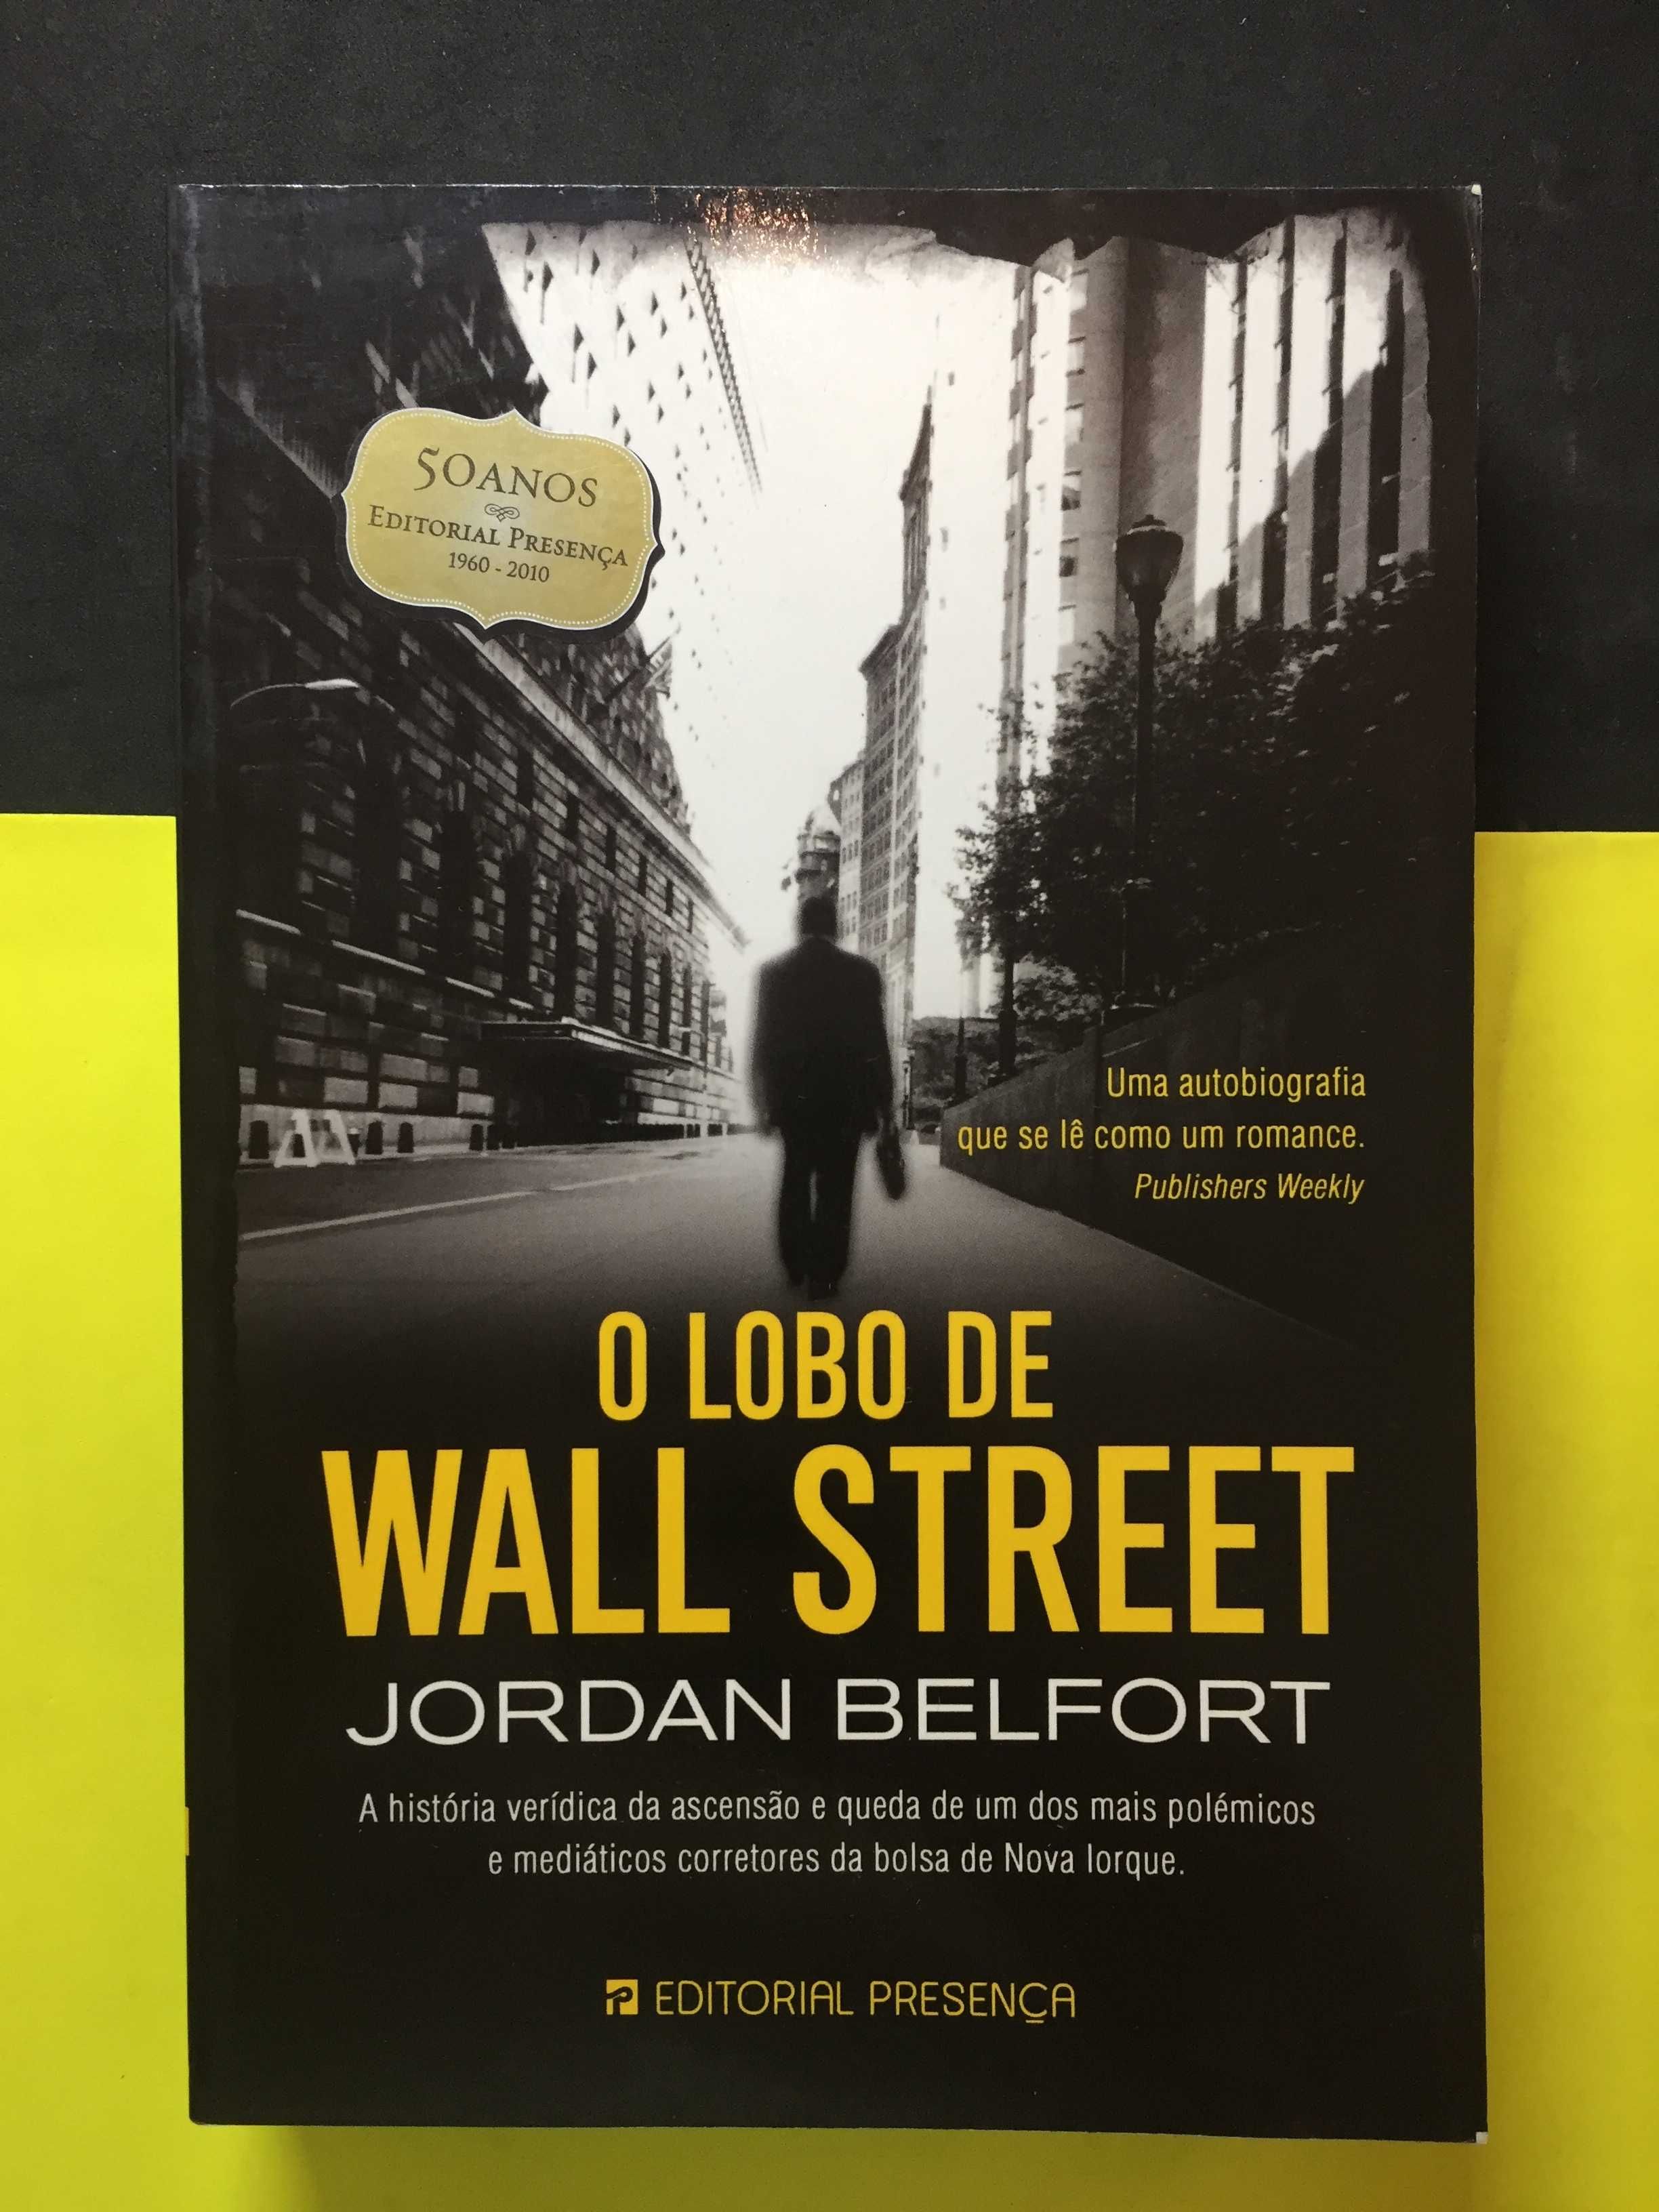 Jordan Belfort - O lobo de wall street